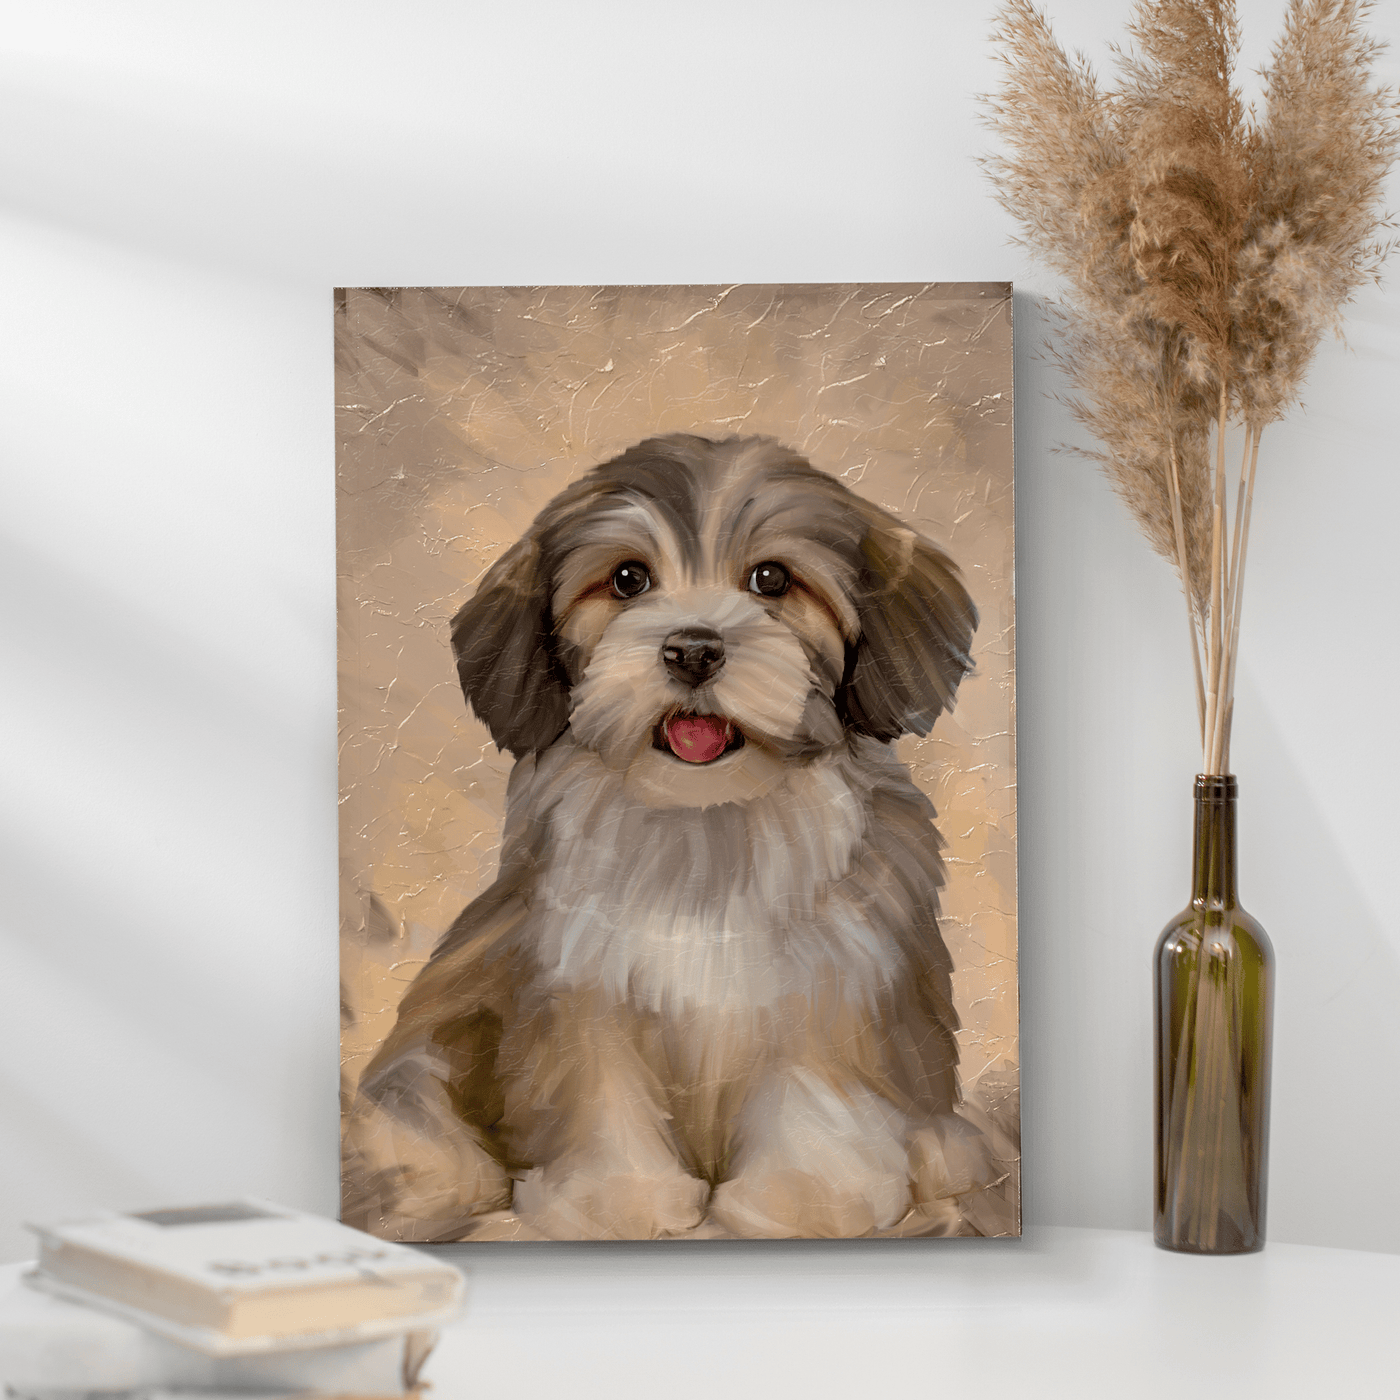 acrylic pet painting of an adorable fur dog